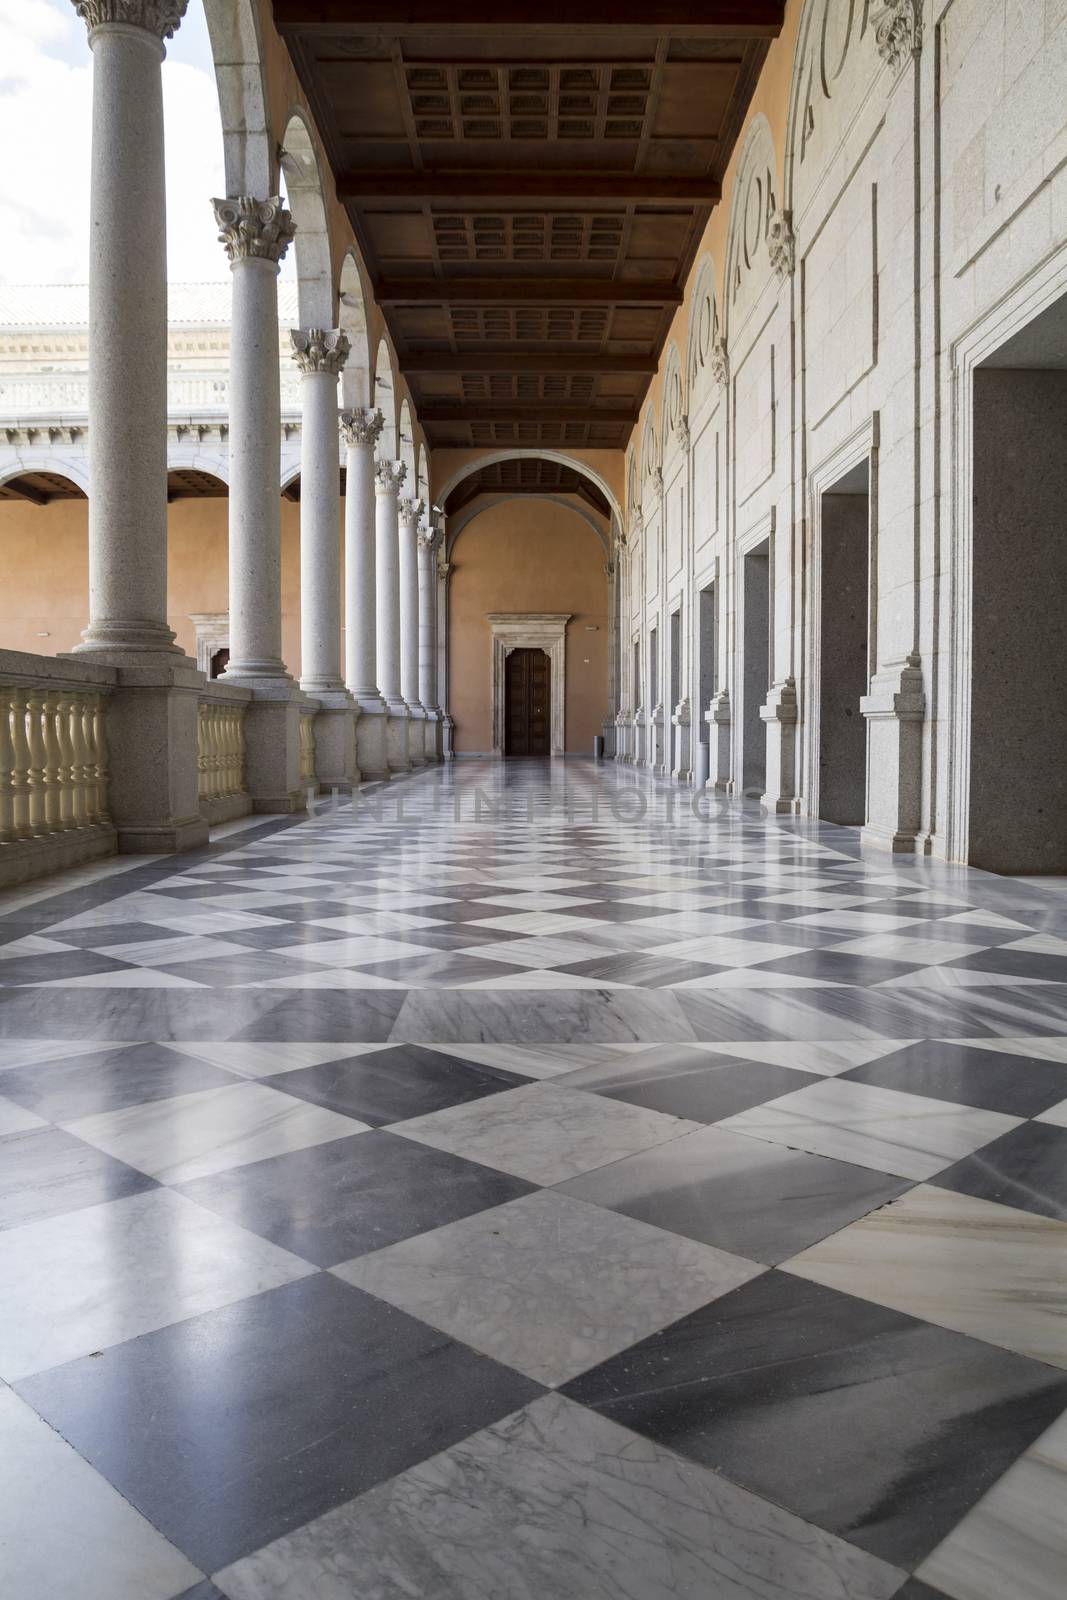 Marble floor, Indoor palace, Alcazar de Toledo, Spain by FernandoCortes